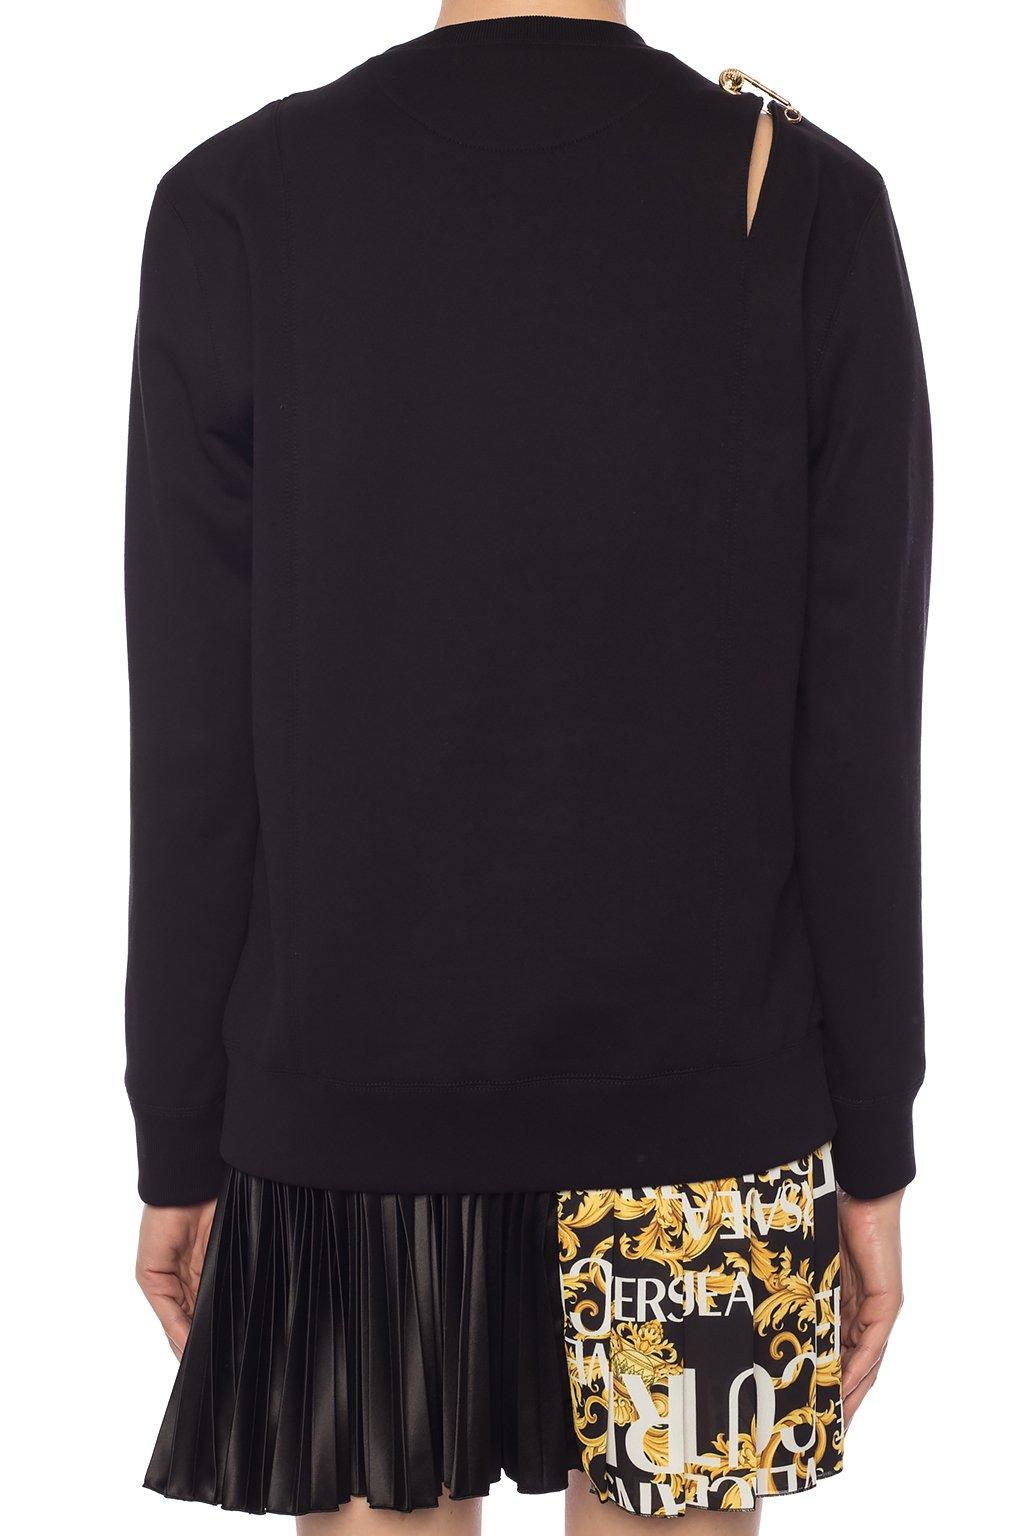 Versace Cotton Safety-pin Sweatshirt in Black - Lyst